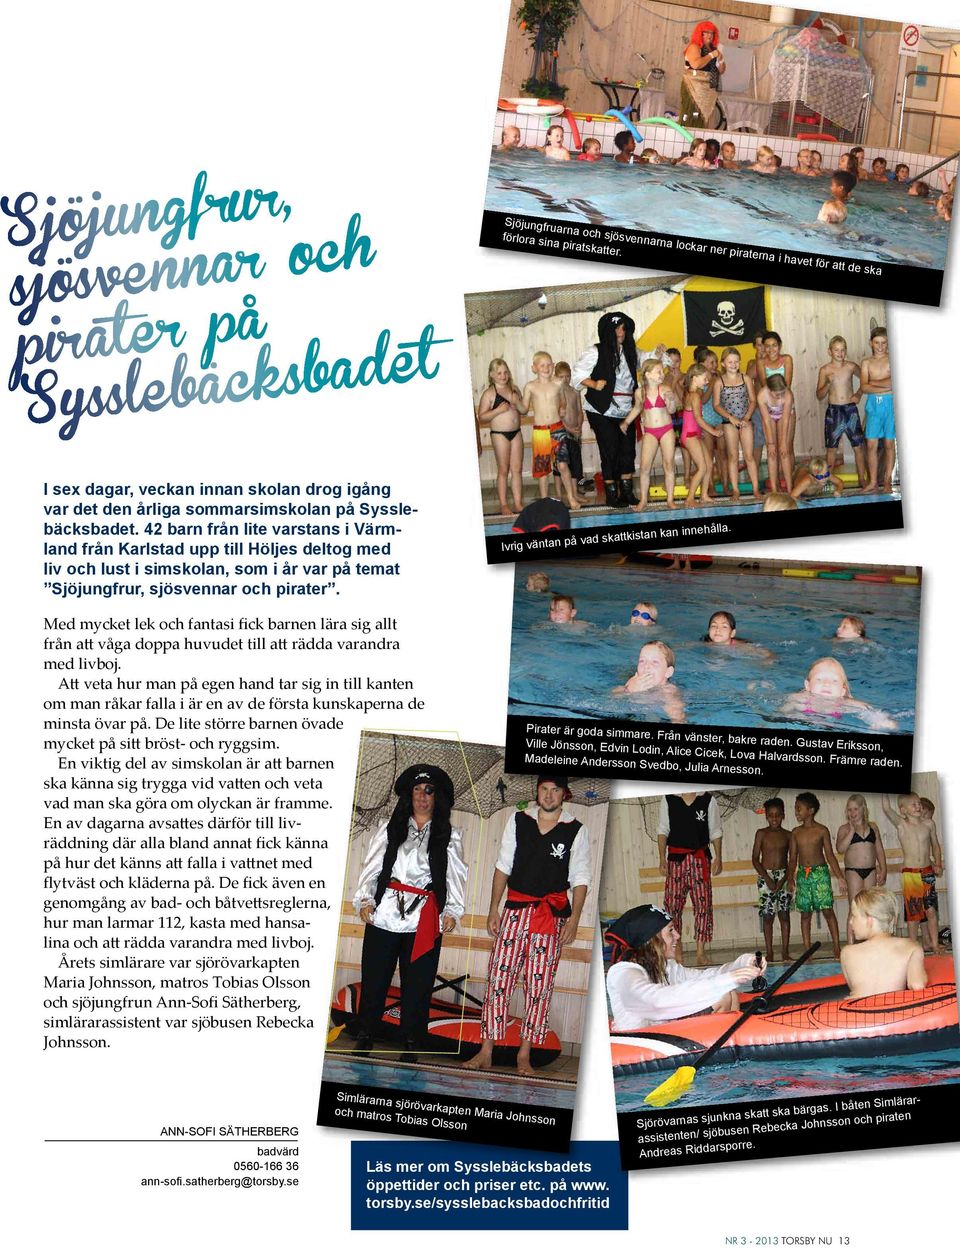 42 barn från lite varstans i Värmland från Karlstad upp till Höljes deltog med liv och lust i simskolan, som i år var på temat Sjöjungfrur, sjösvennar och pirater.